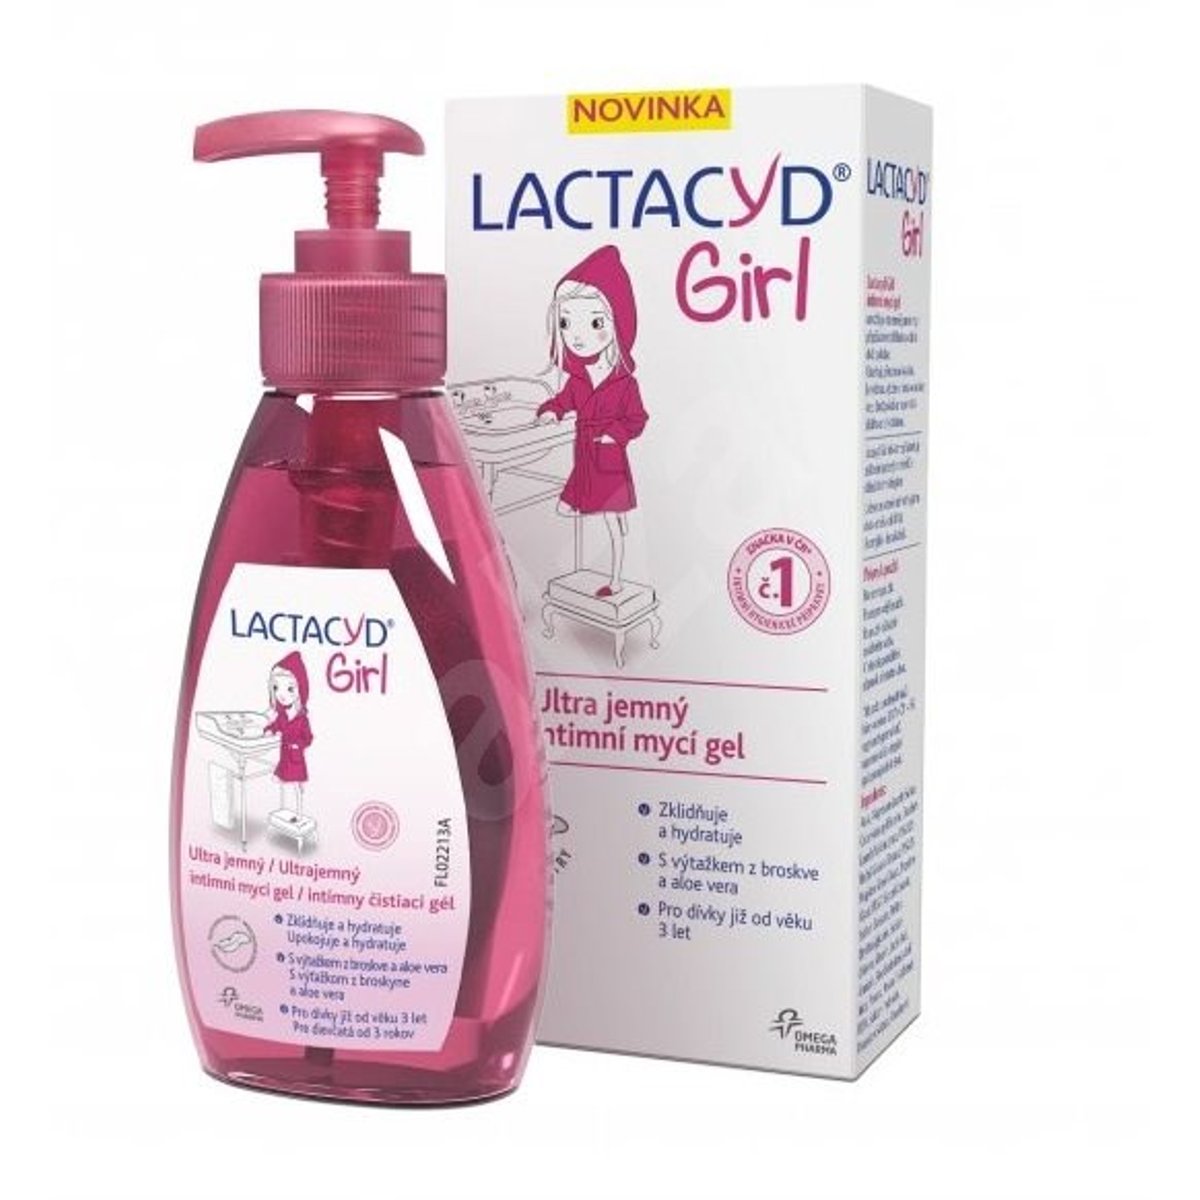 Lactacyd Girl Ultra Jemný Intimní Mycí Gel 200ml V Akci Akcnicenycz 4869